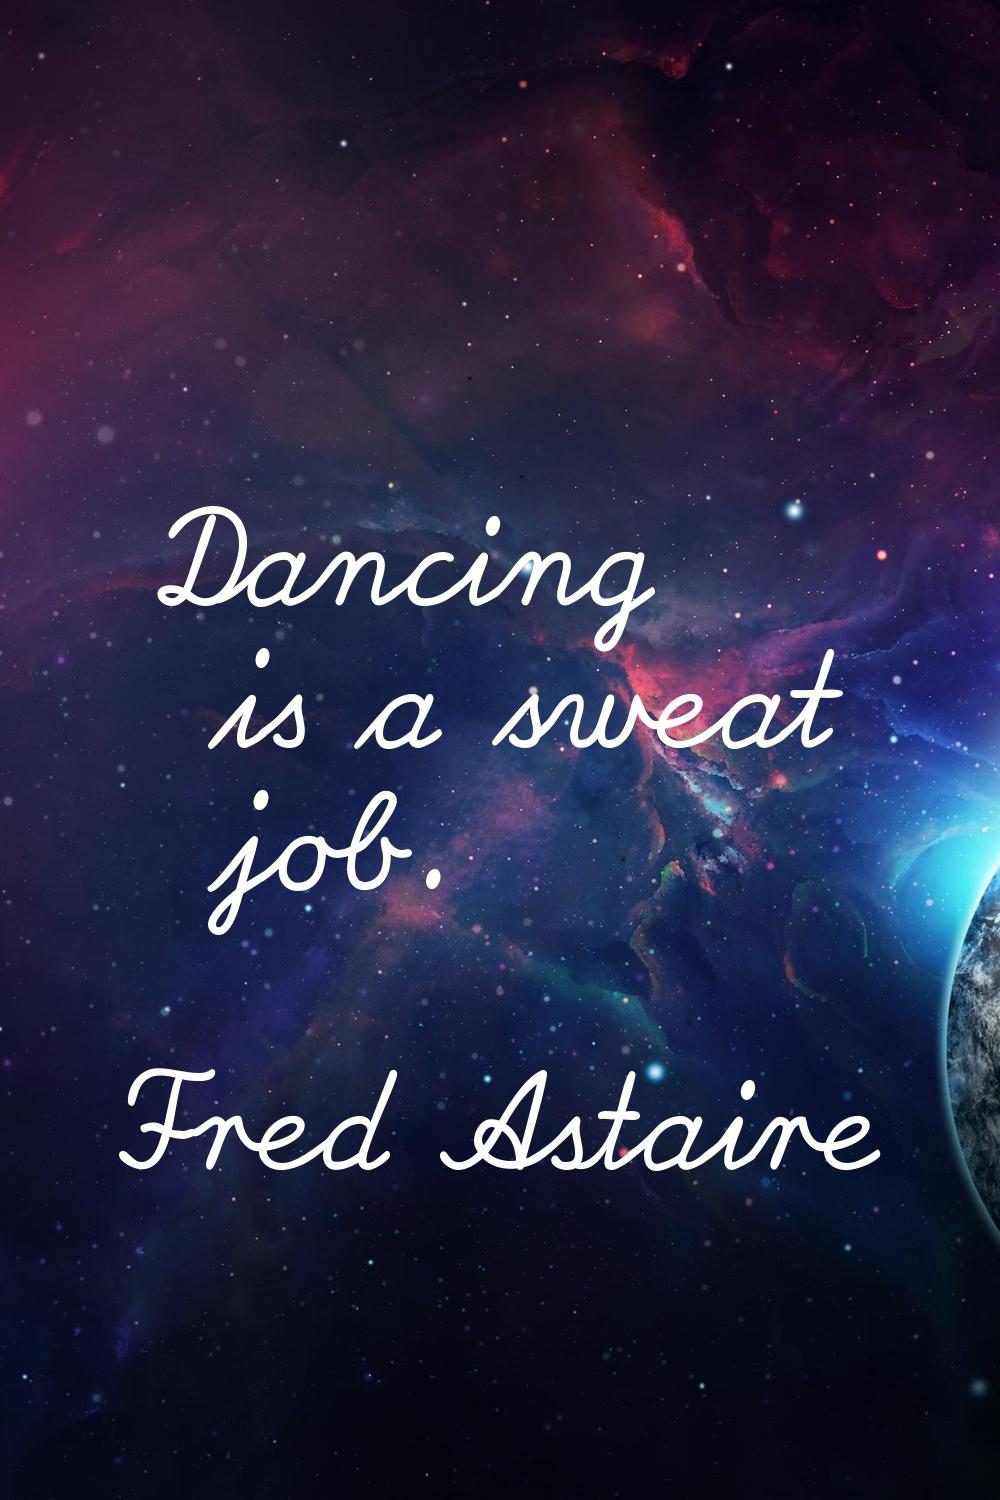 Dancing is a sweat job.